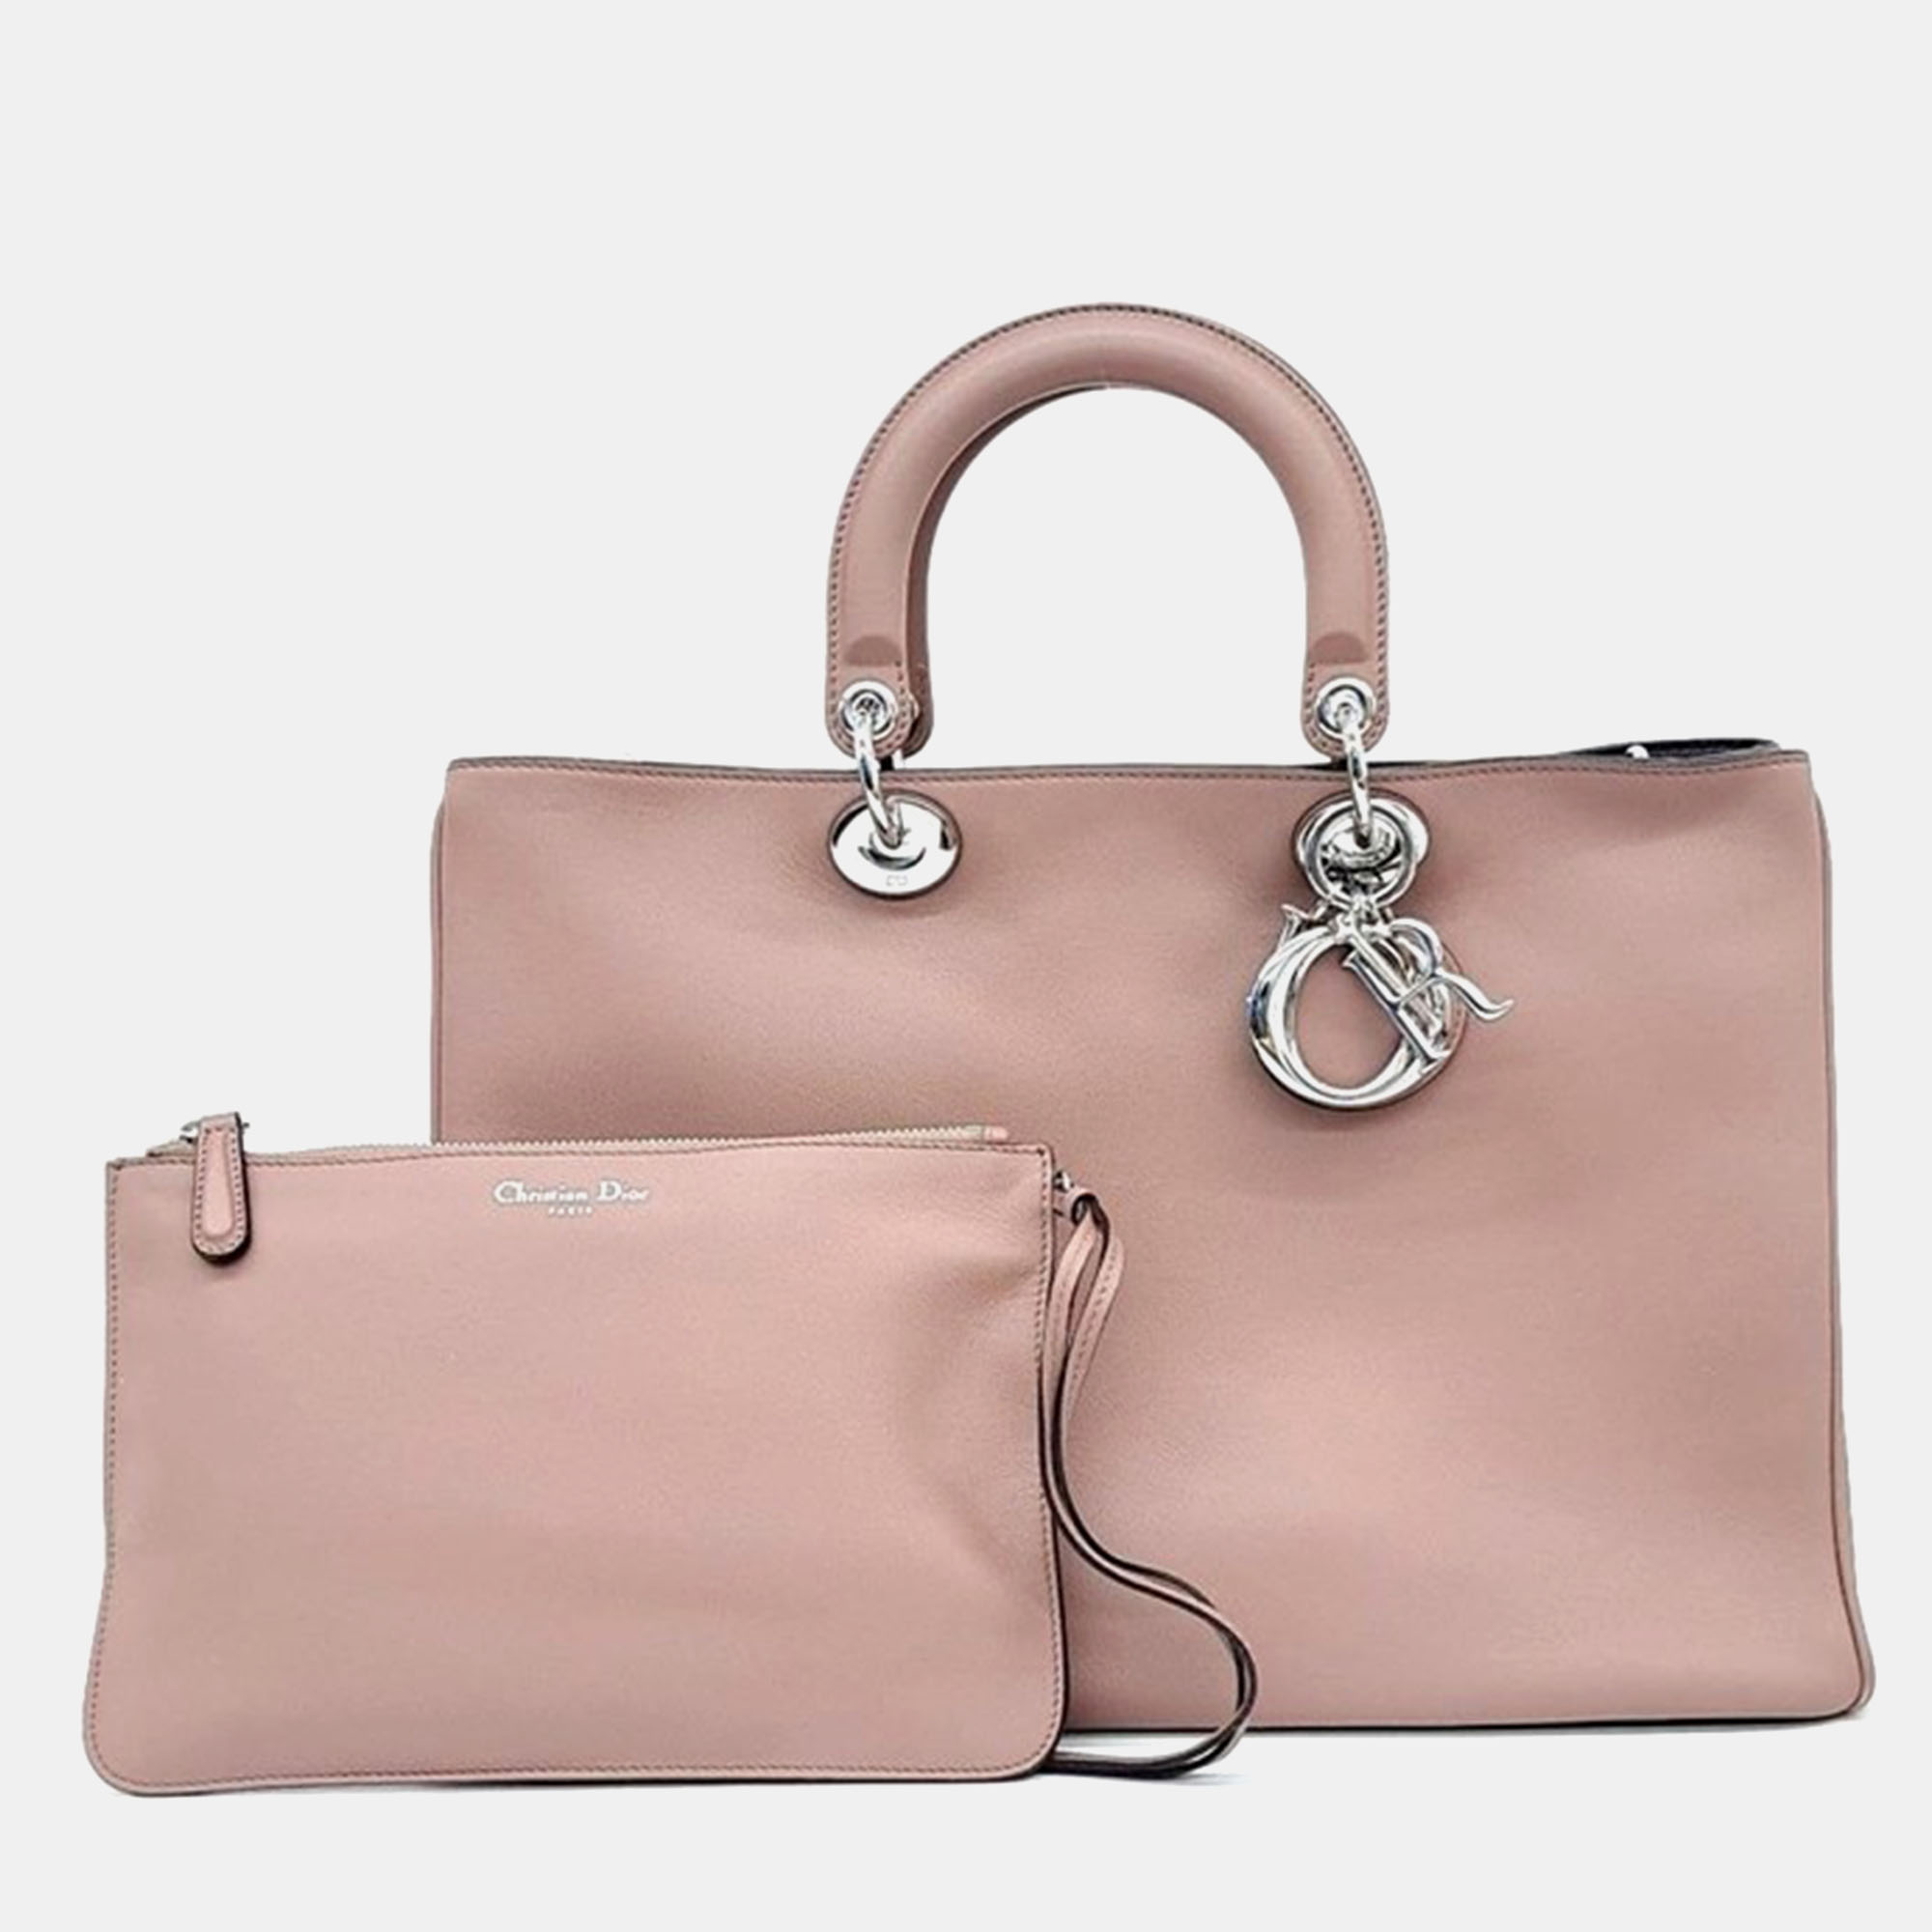 

Christian Dior Diorever handbag, Pink